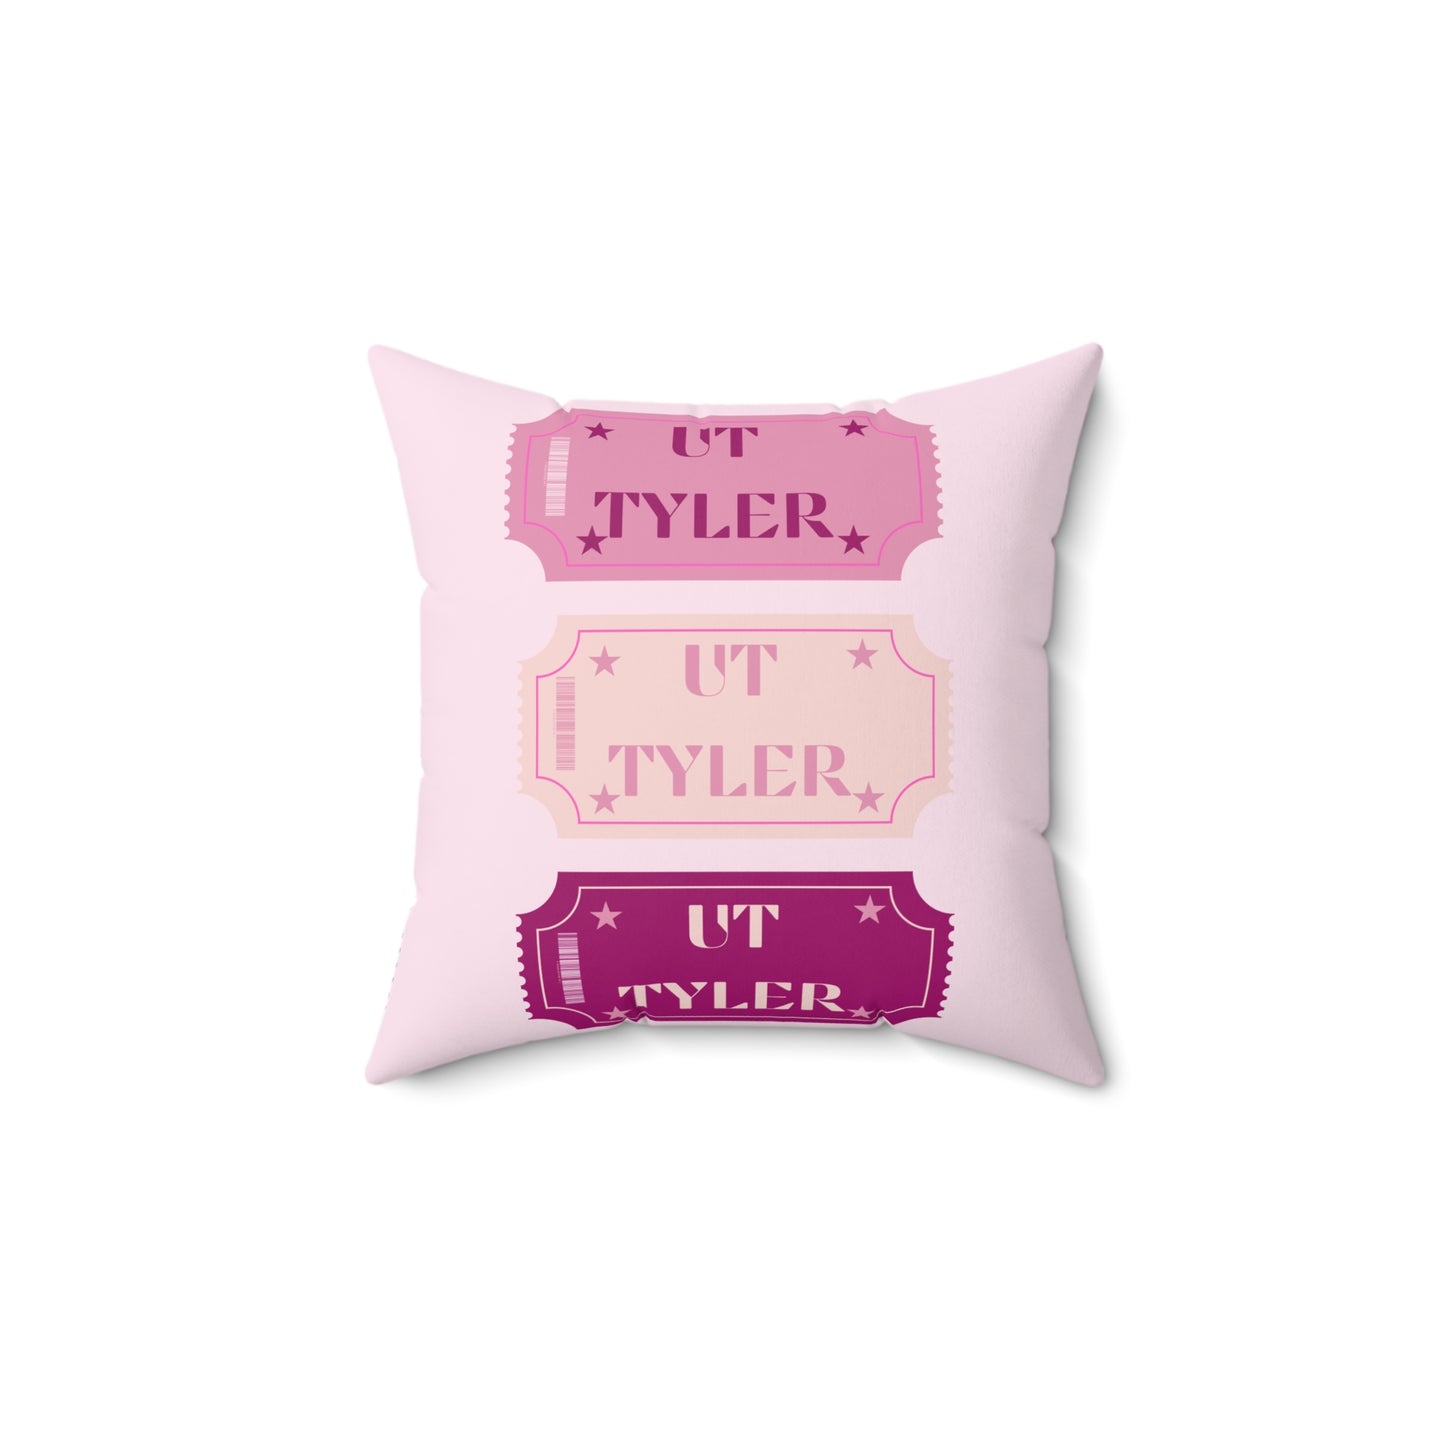 "UT TYLER" Square Pillow